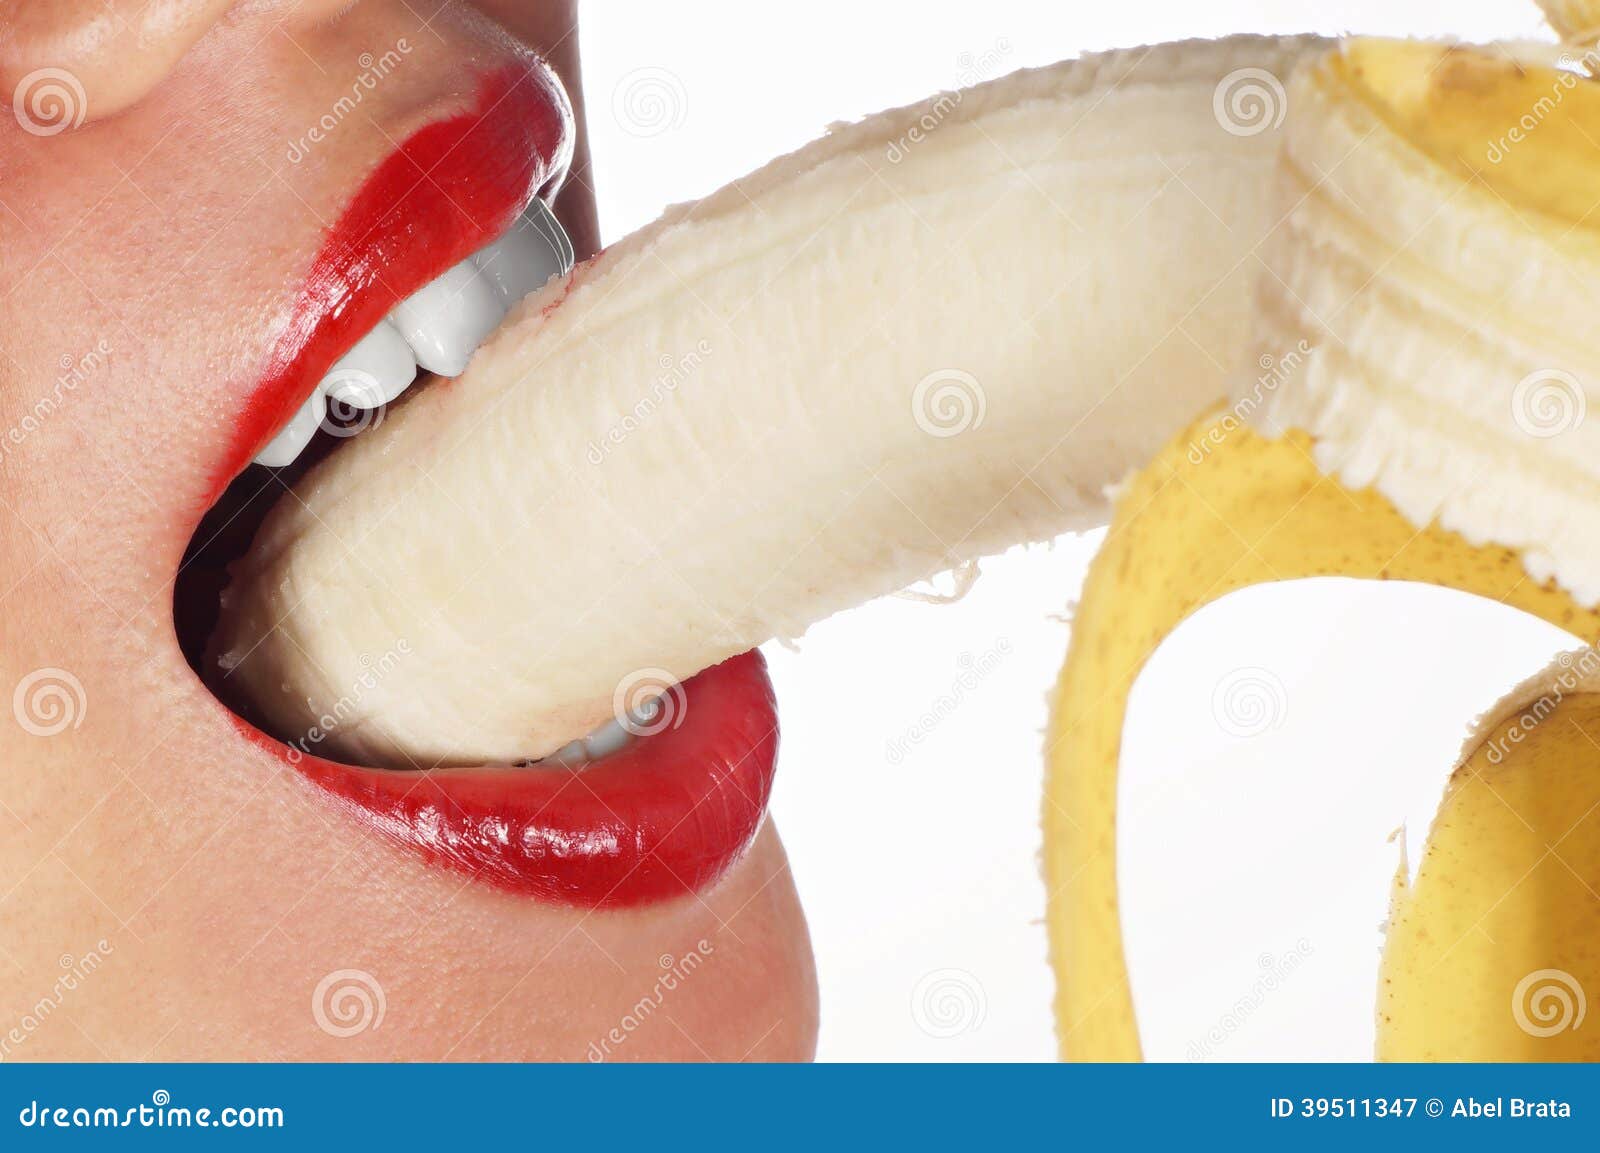 Oral Sex Banana 79